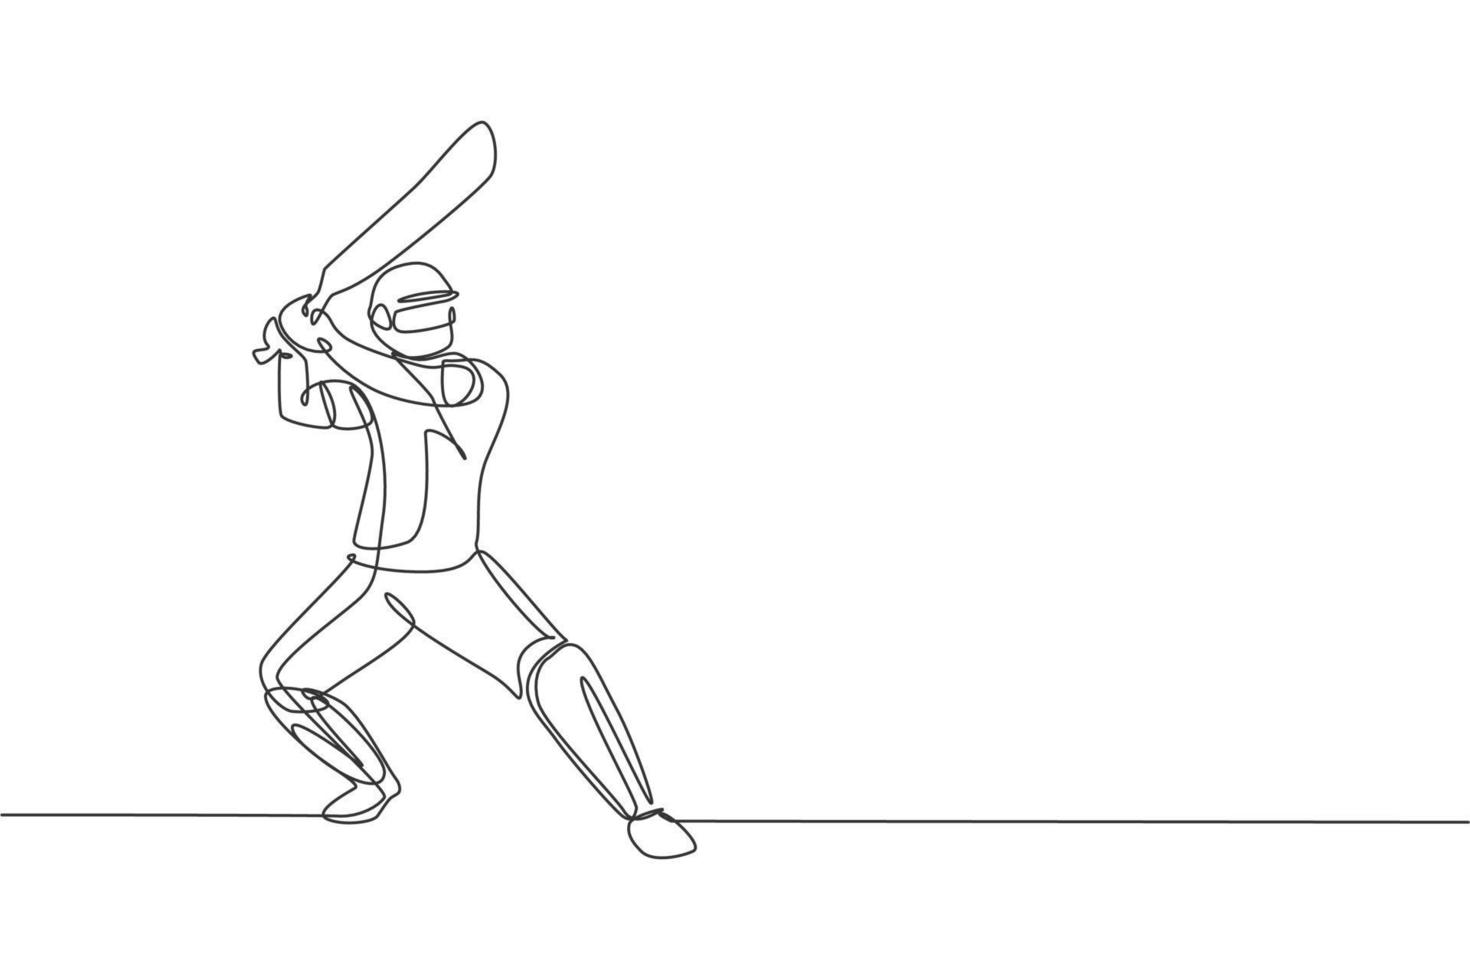 enda kontinuerlig linjeritning av ung smidig man cricketspelare stående och redo att slå bollen vektorillustration. sport träning koncept. trendig one line draw design för cricket marknadsföringsmedia vektor